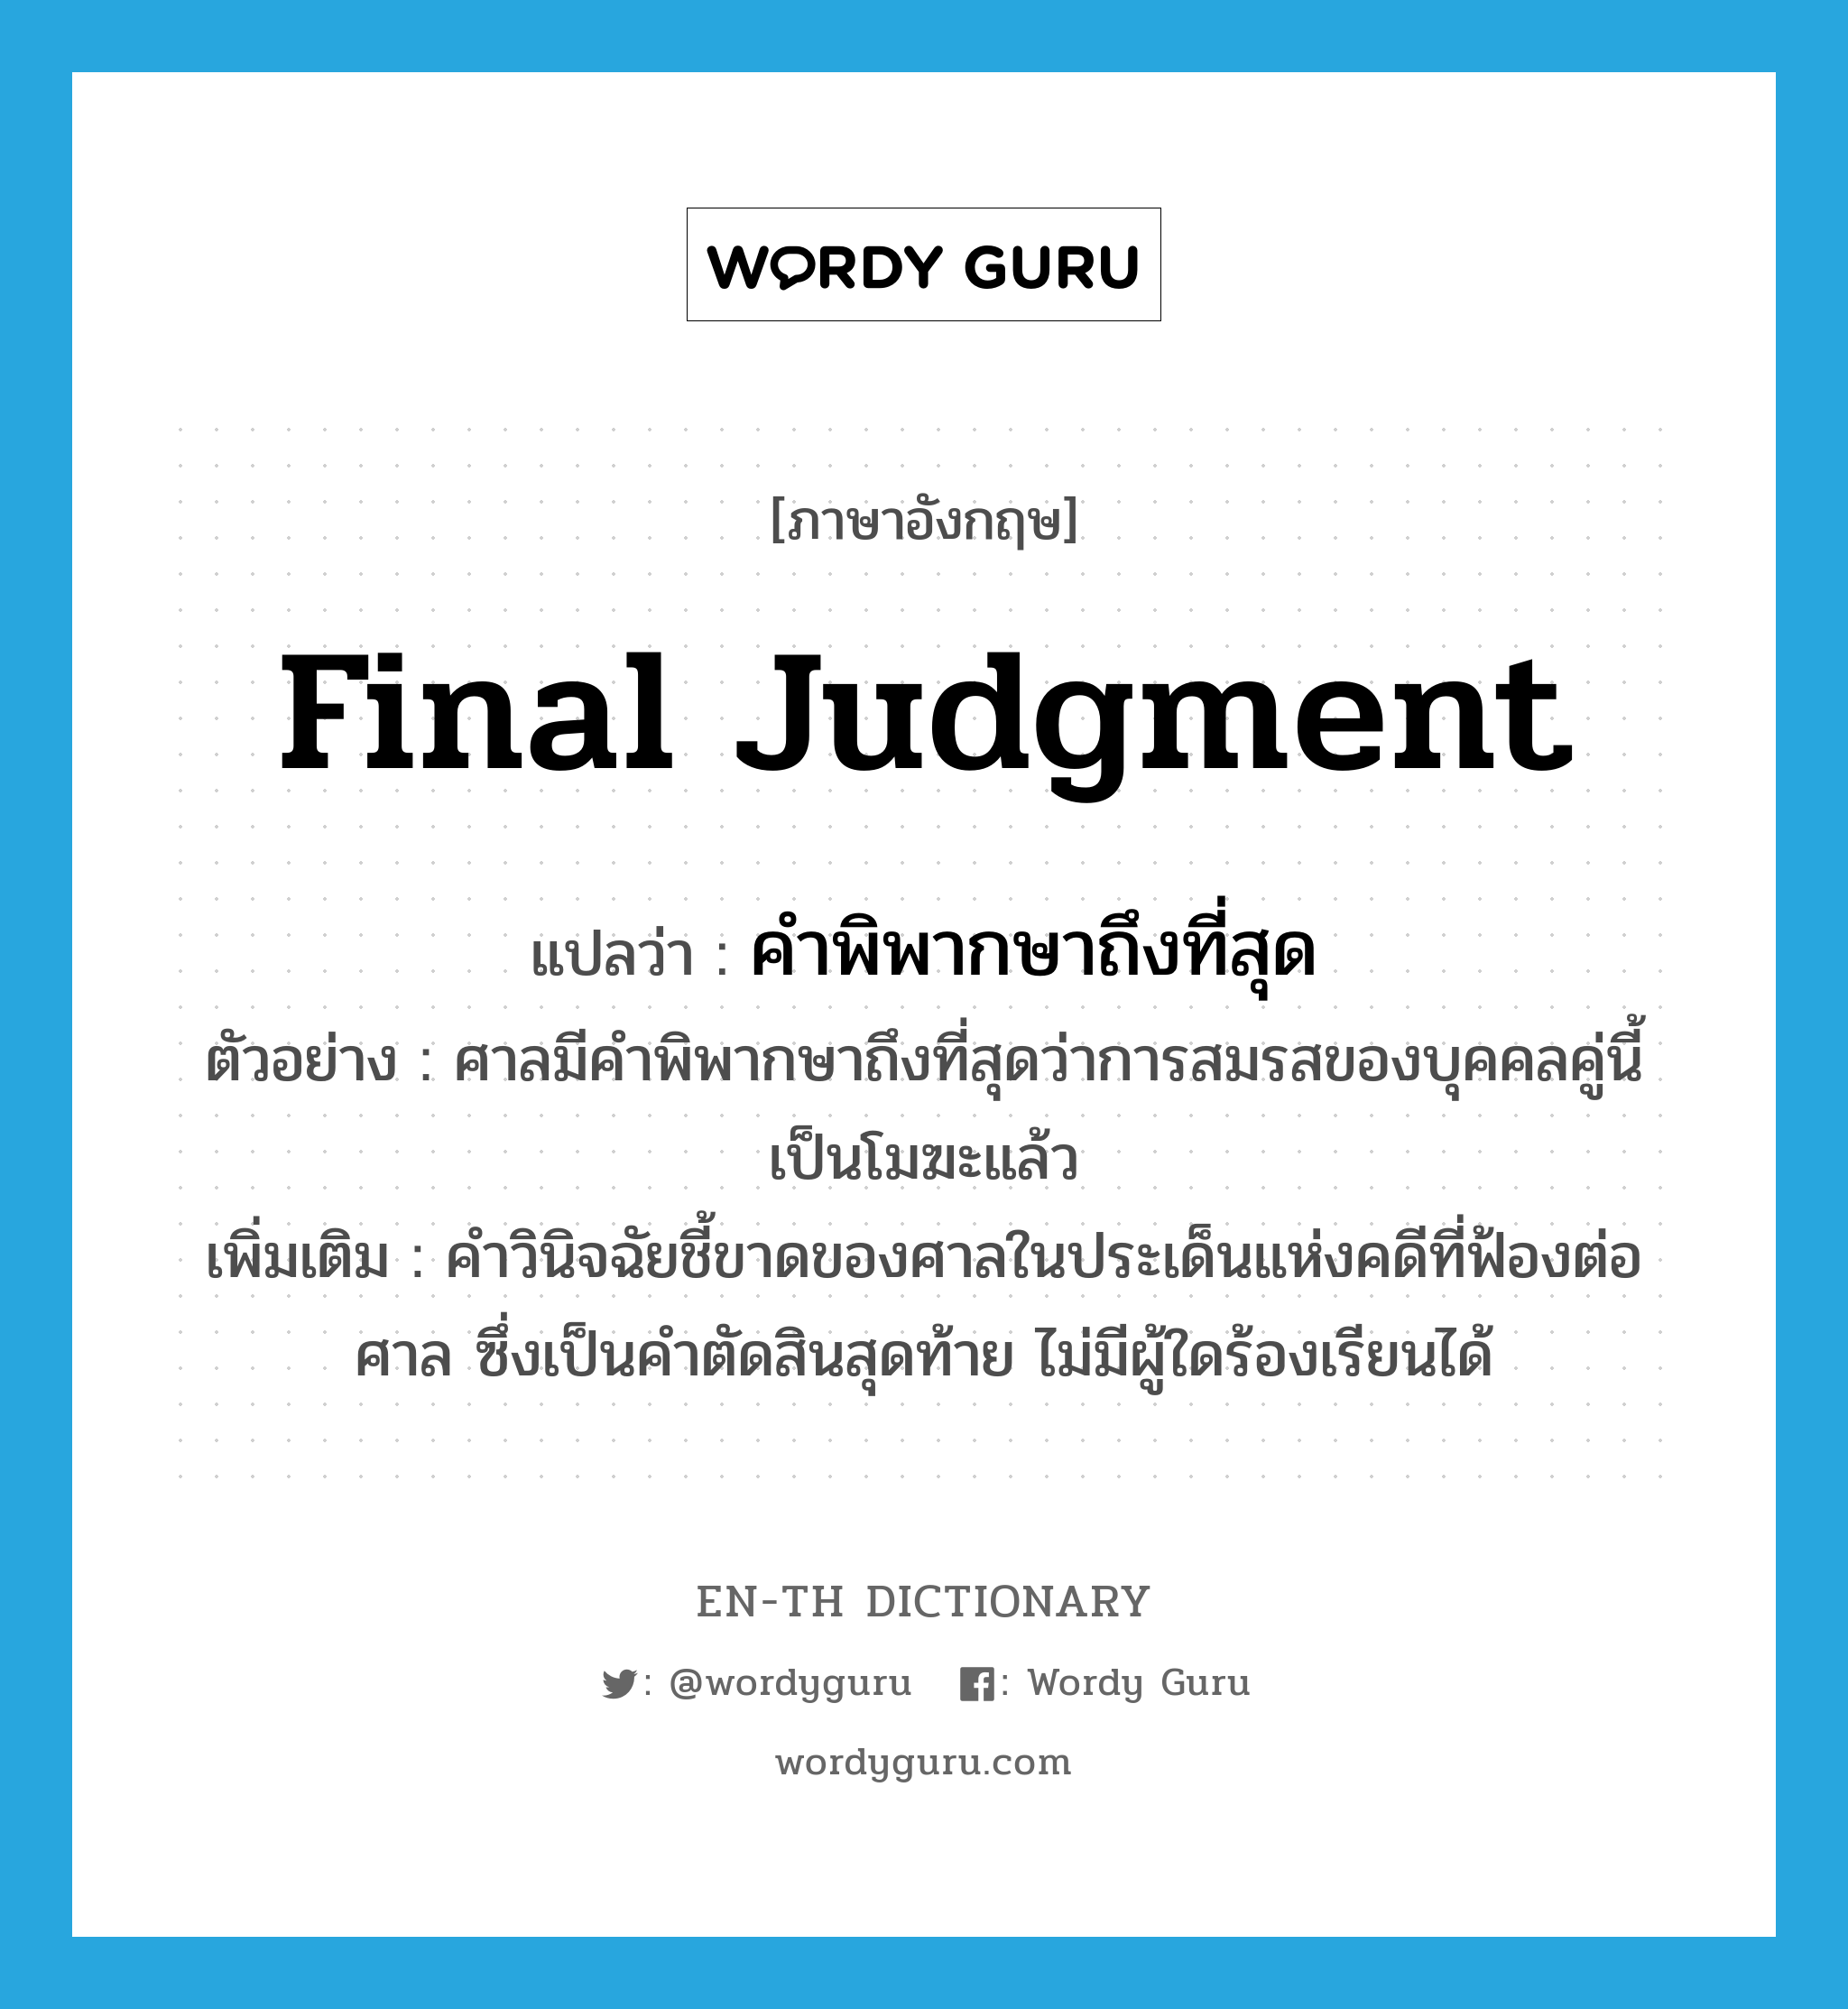 final judgment แปลว่า?, คำศัพท์ภาษาอังกฤษ final judgment แปลว่า คำพิพากษาถึงที่สุด ประเภท N ตัวอย่าง ศาลมีคำพิพากษาถึงที่สุดว่าการสมรสของบุคคลคู่นี้ เป็นโมฆะแล้ว เพิ่มเติม คำวินิจฉัยชี้ขาดของศาลในประเด็นแห่งคดีที่ฟ้องต่อศาล ซึ่งเป็นคำตัดสินสุดท้าย ไม่มีผู้ใดร้องเรียนได้ หมวด N